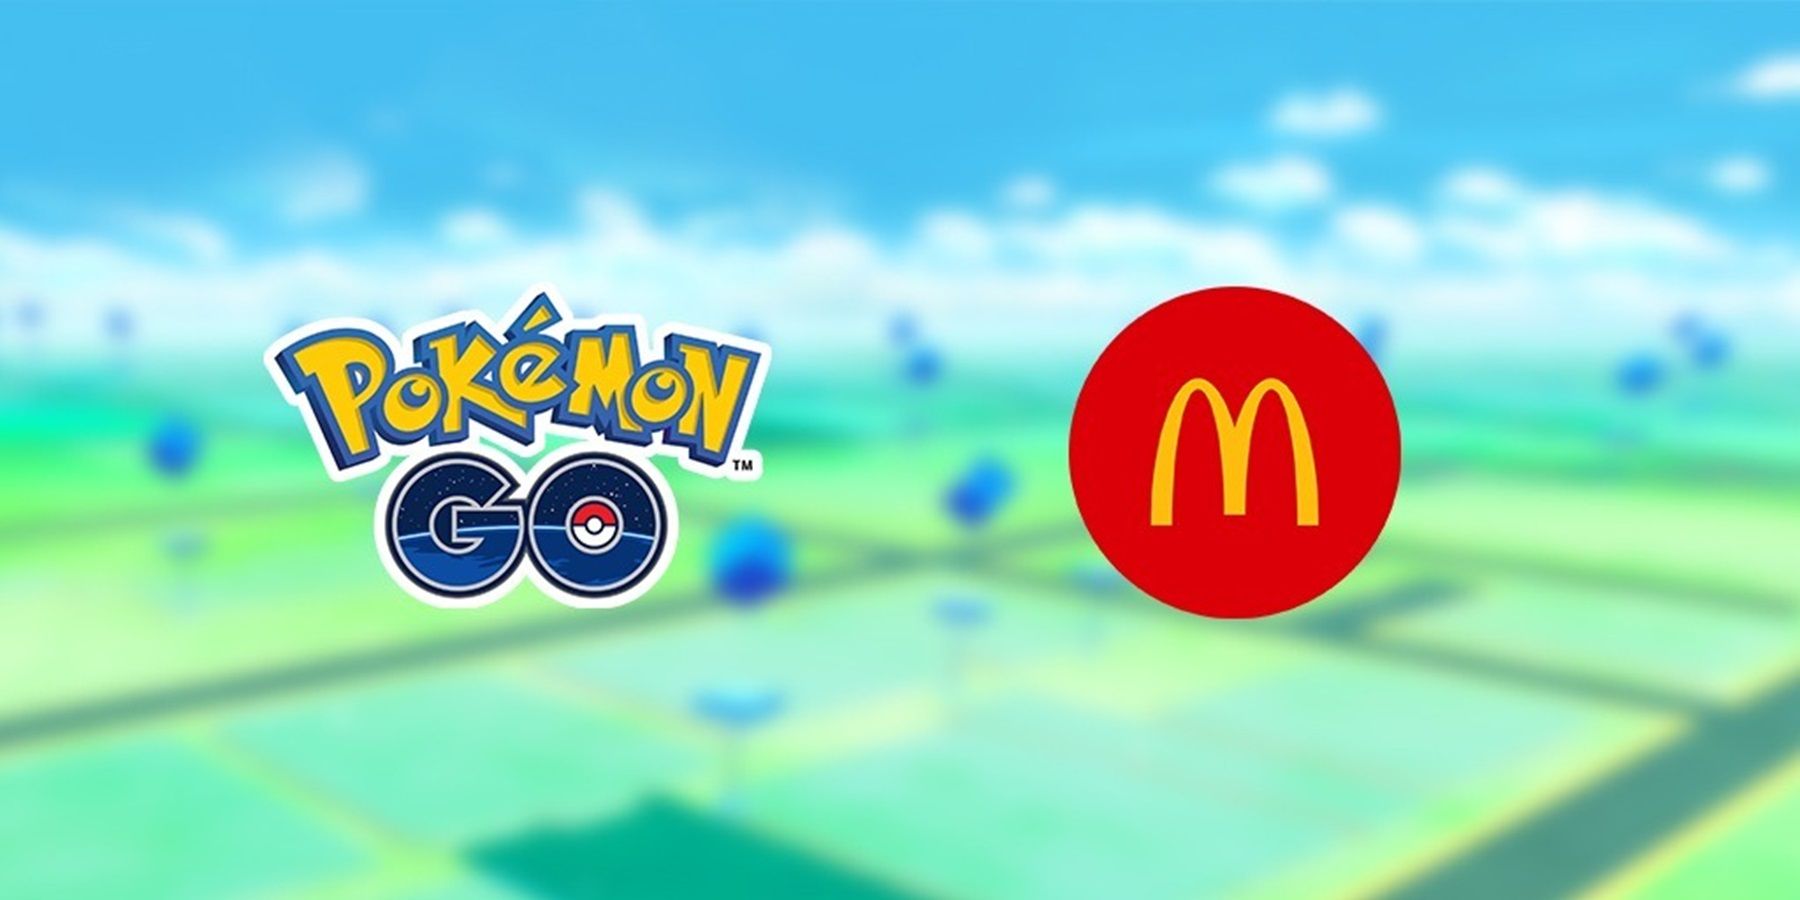 pokemon go logo mcdonalds